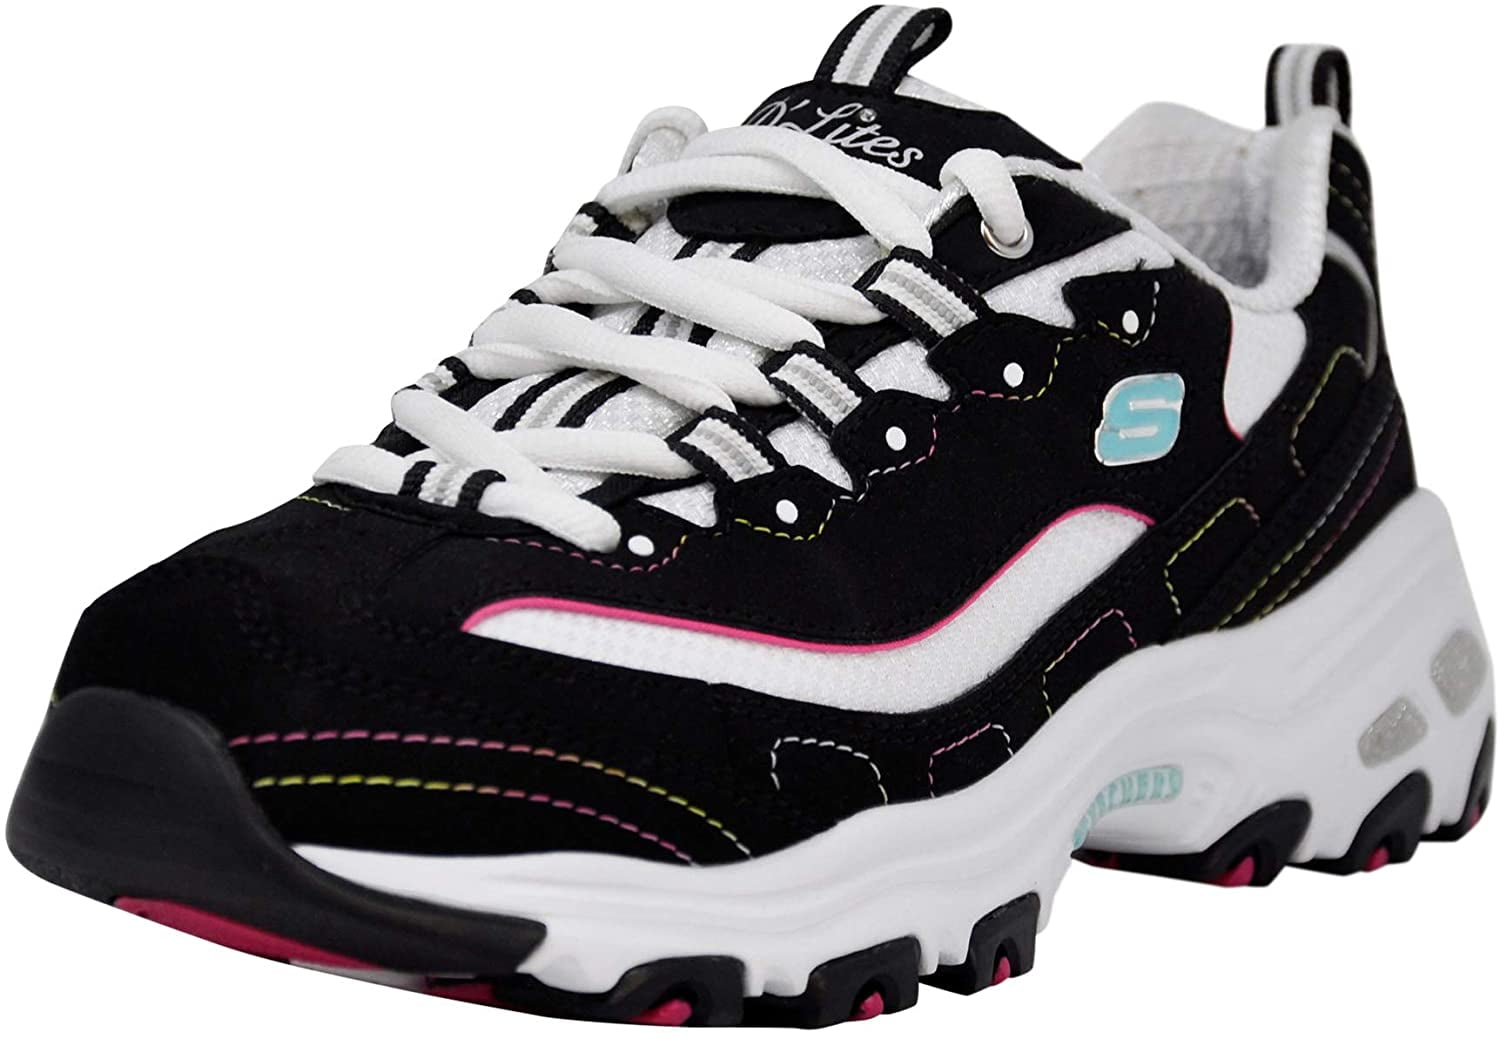 reporte Tibio Accesible Skechers Women's D Lites Original Shoe, Navy/Pink, 9.5 M US - Walmart.com